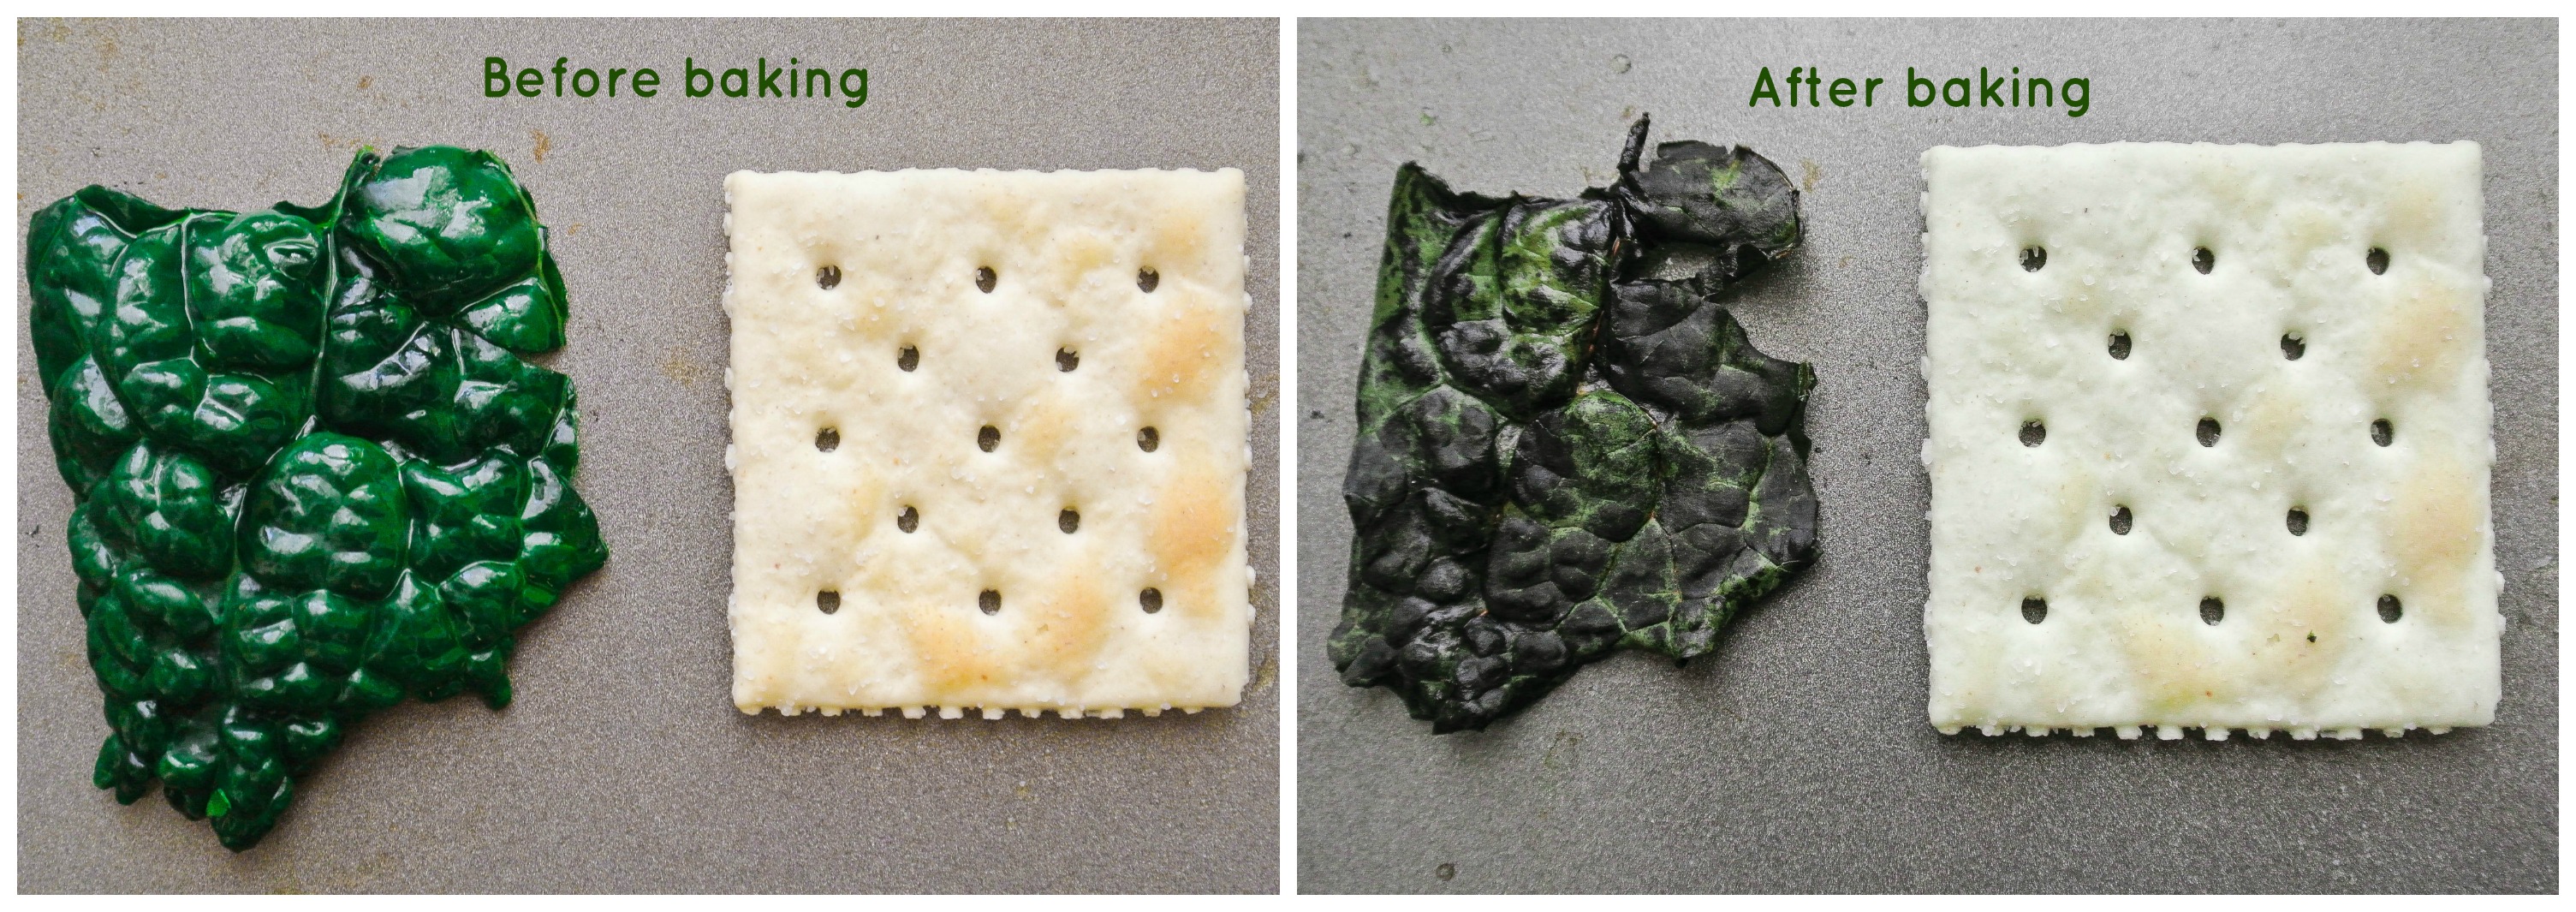 Satine comparison - Kale chips